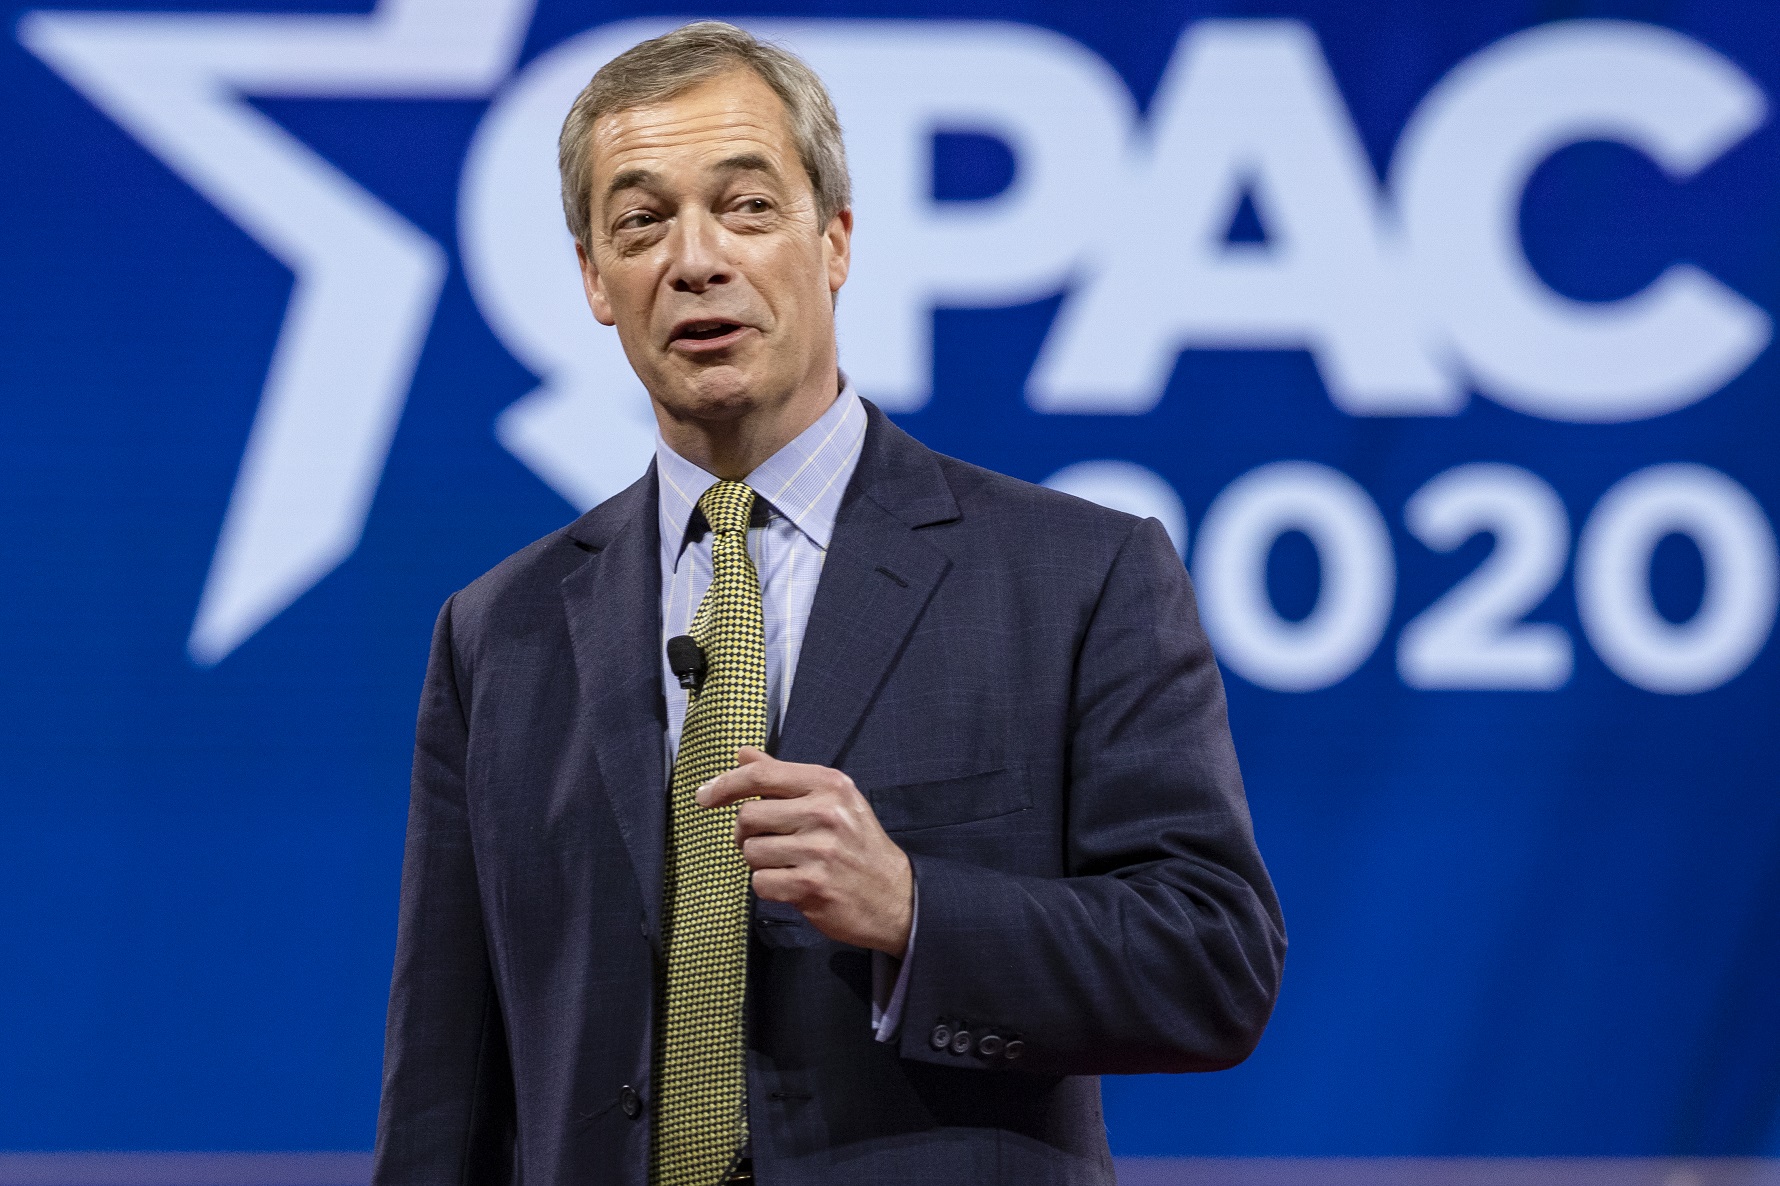 Nigel Farage Quits As Reform UK Leader